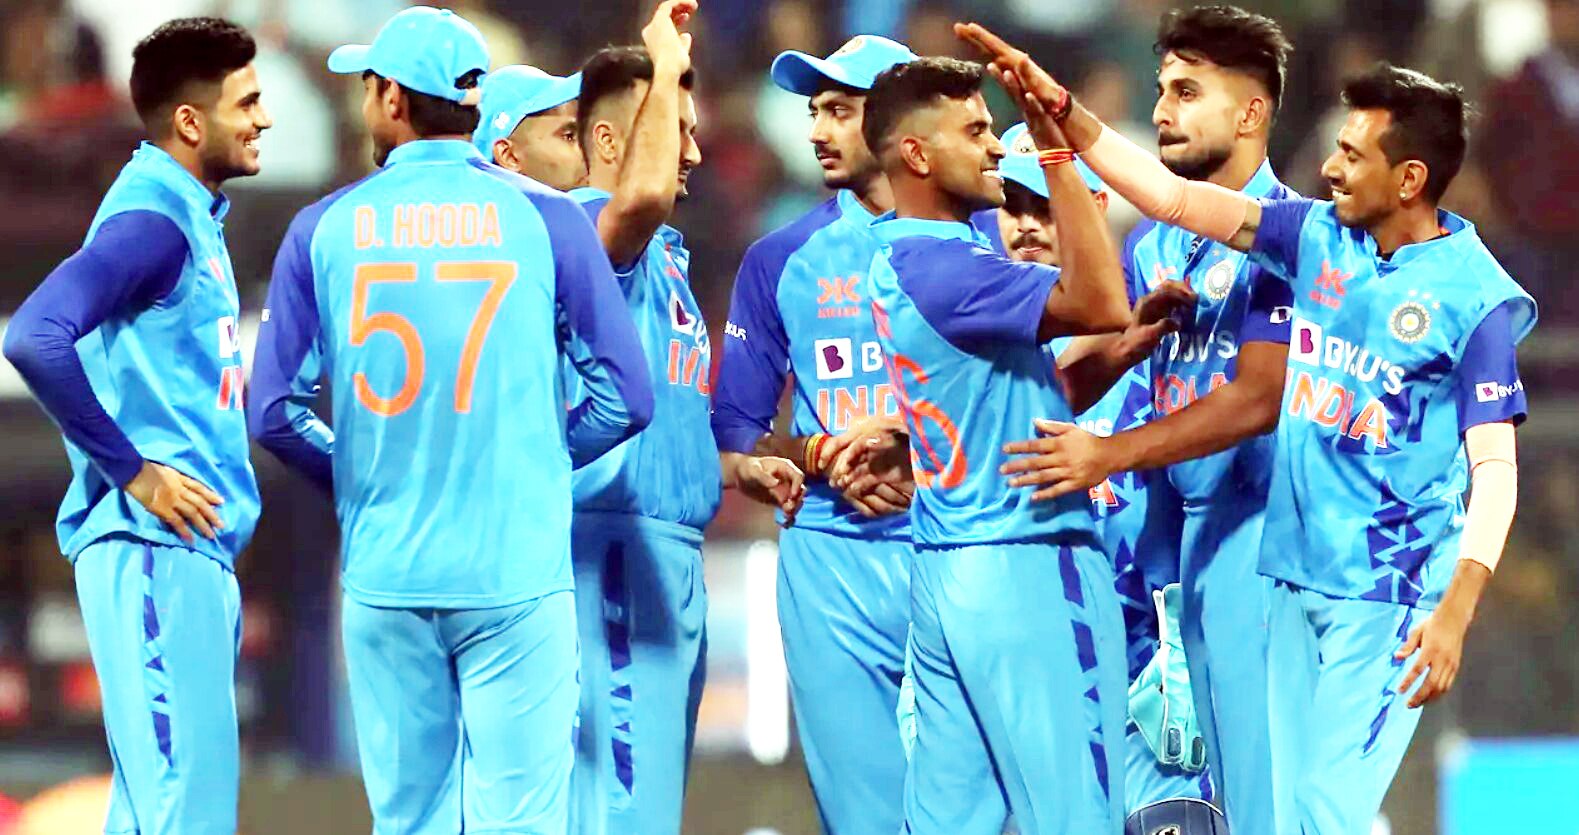 IND vs NZ: धोनी का ये दोस्त बनेगा टीम इंडिया का सबसे बड़ा दुश्मन, रांची टी20 मैच से पहले दी धमकी